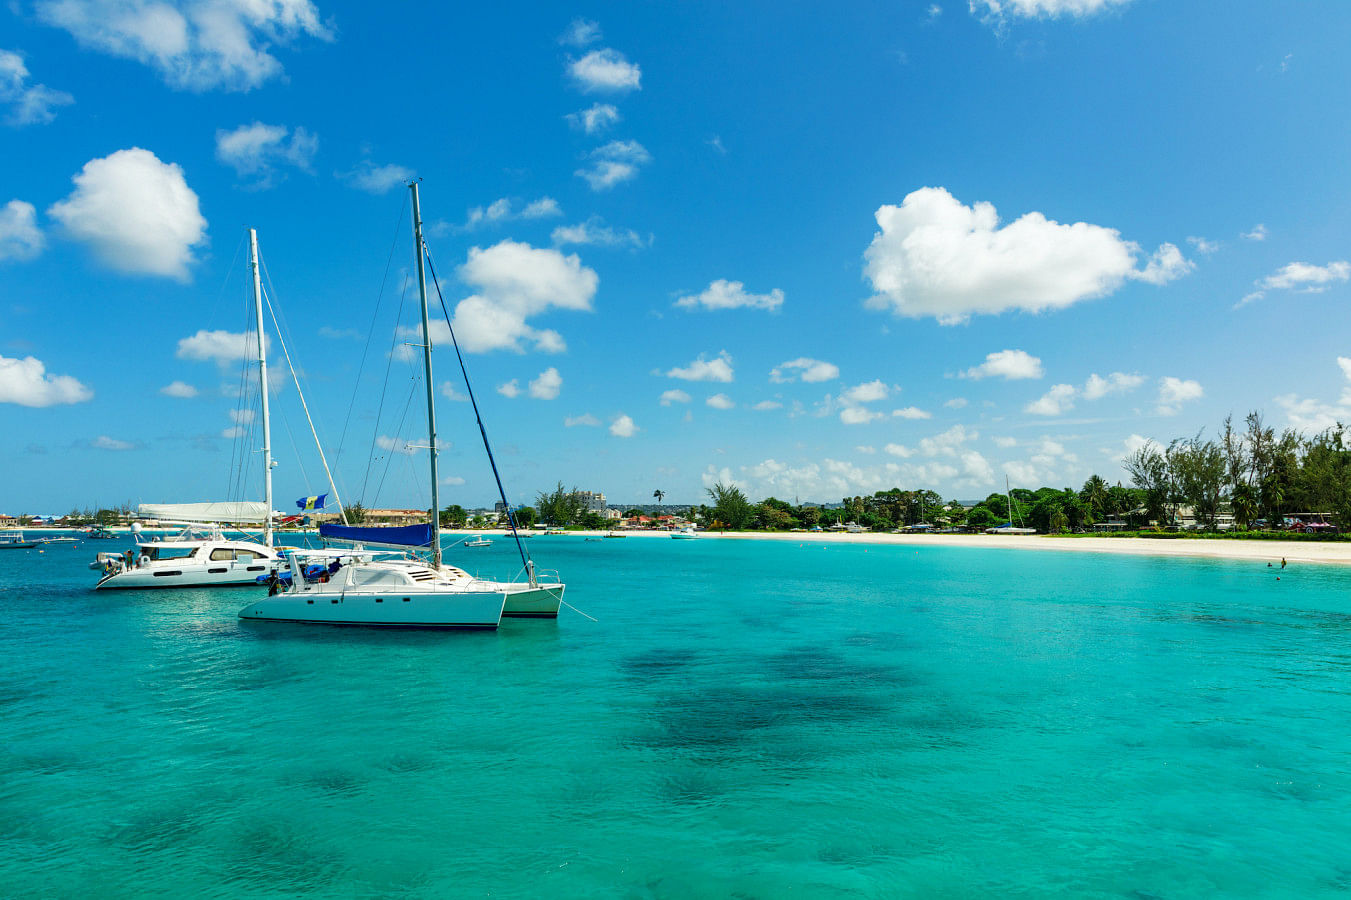 Hyr en båt i Barbados